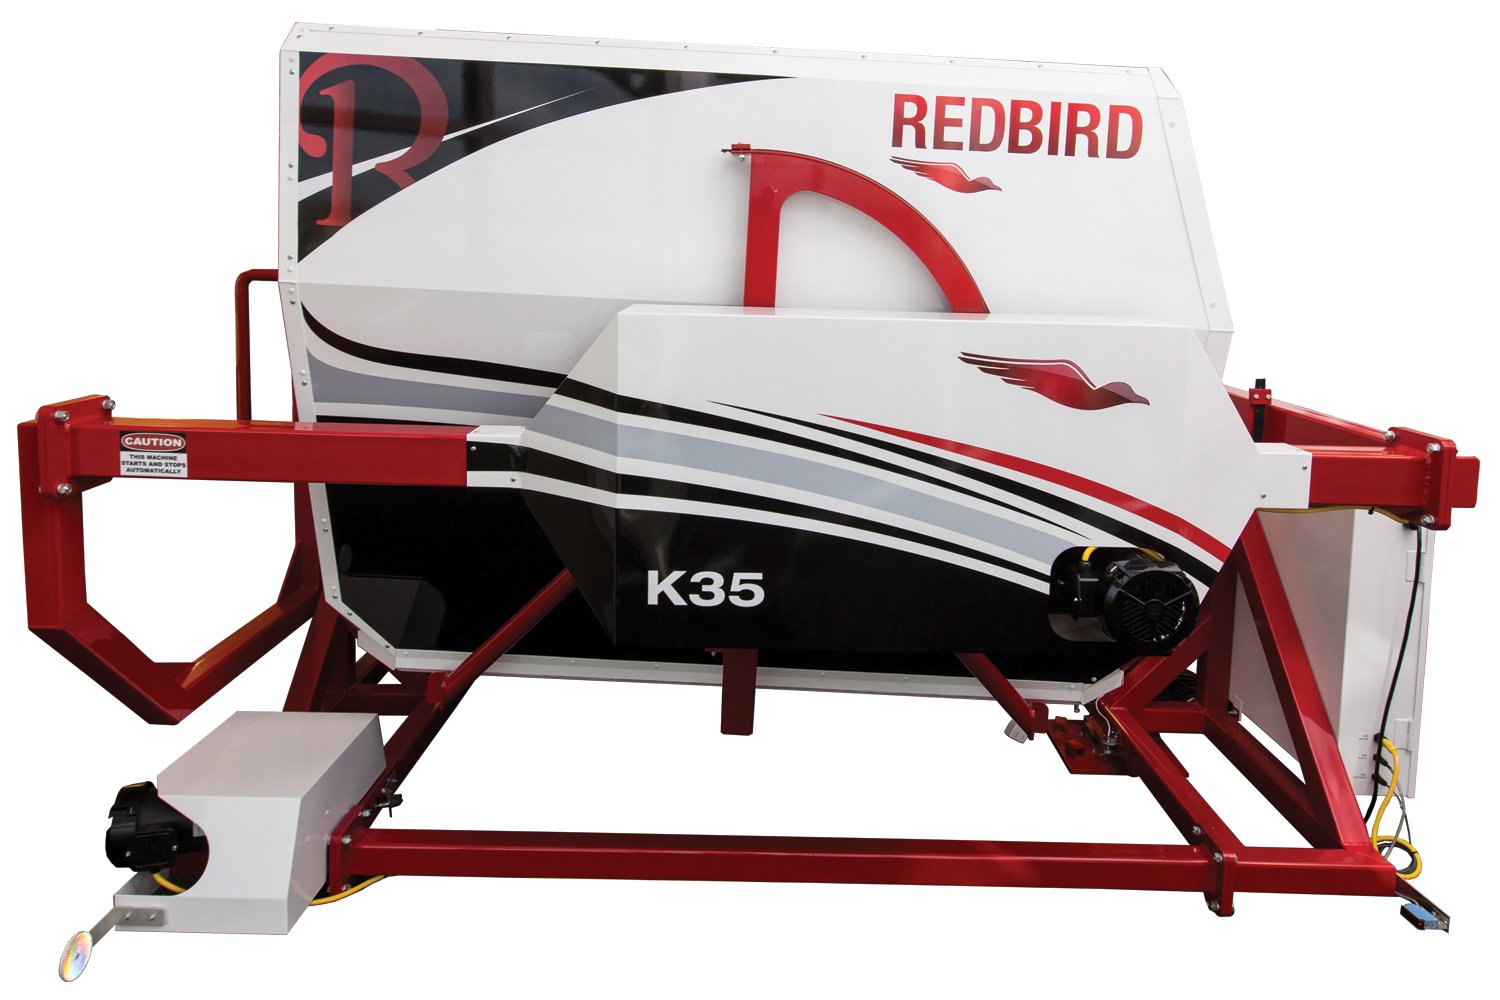 Redbird King Air 350